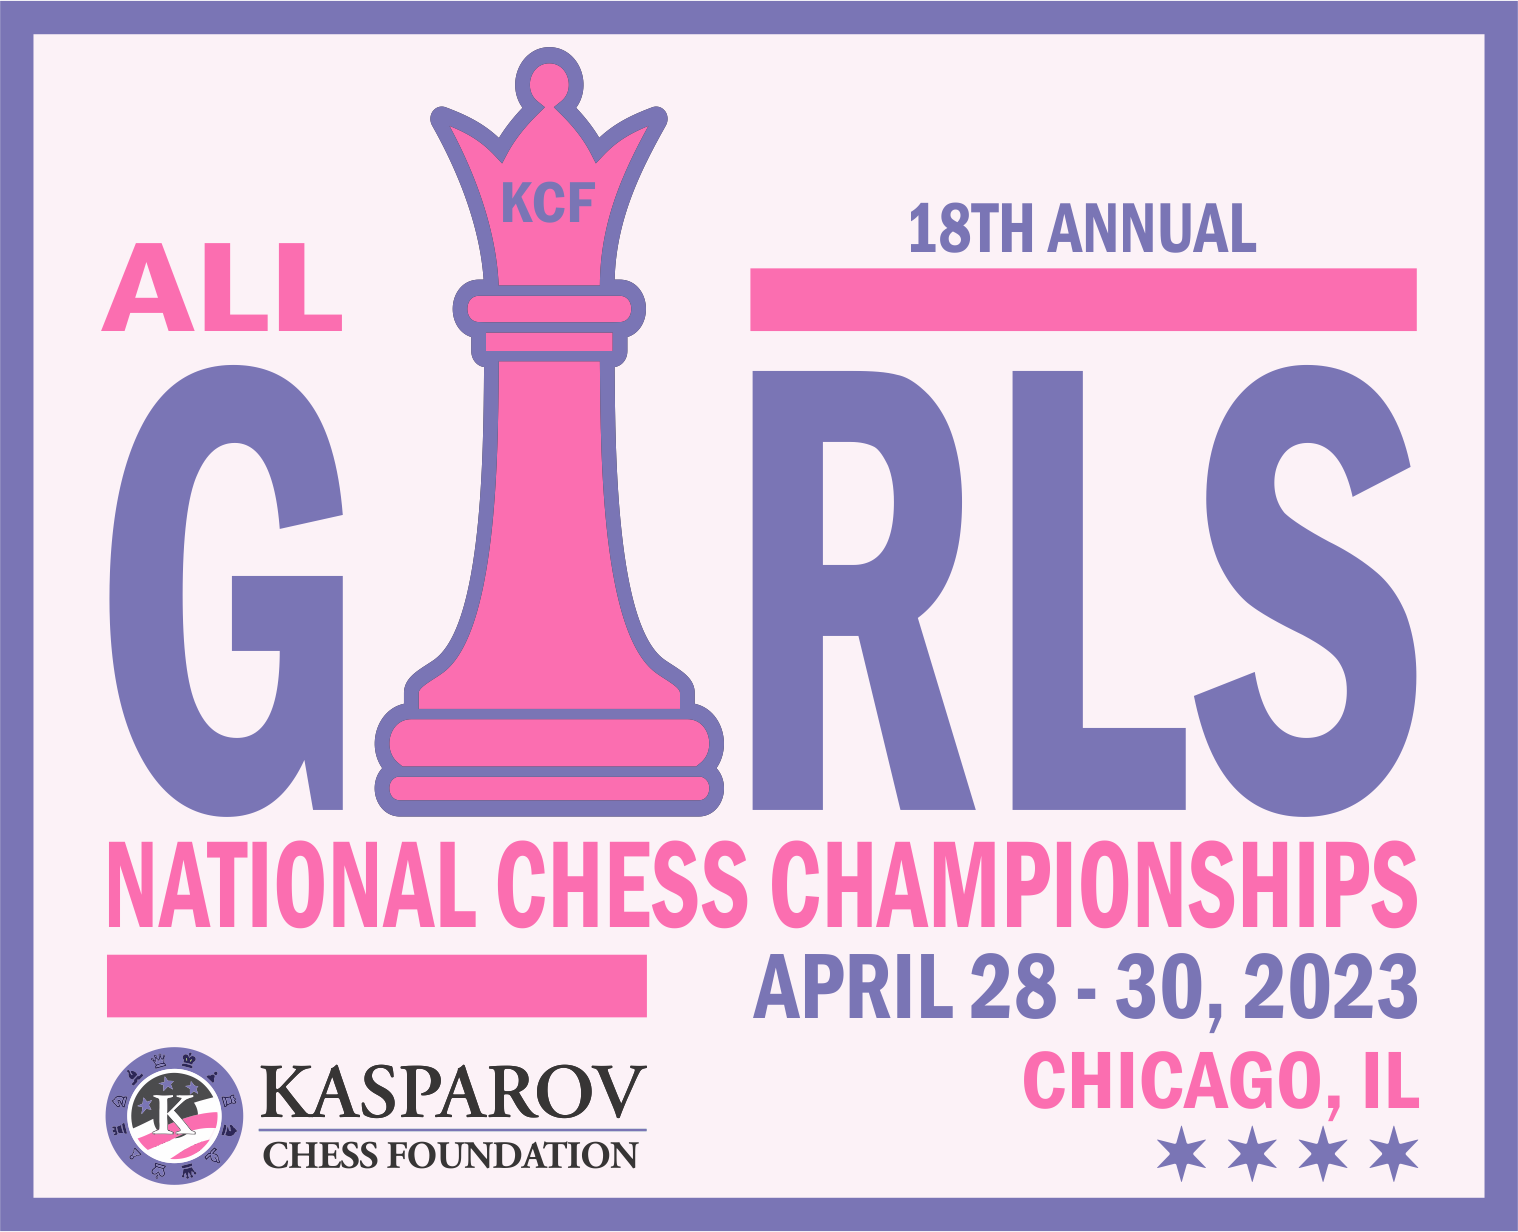 Renaissance Knights Chicago's premier chess organization